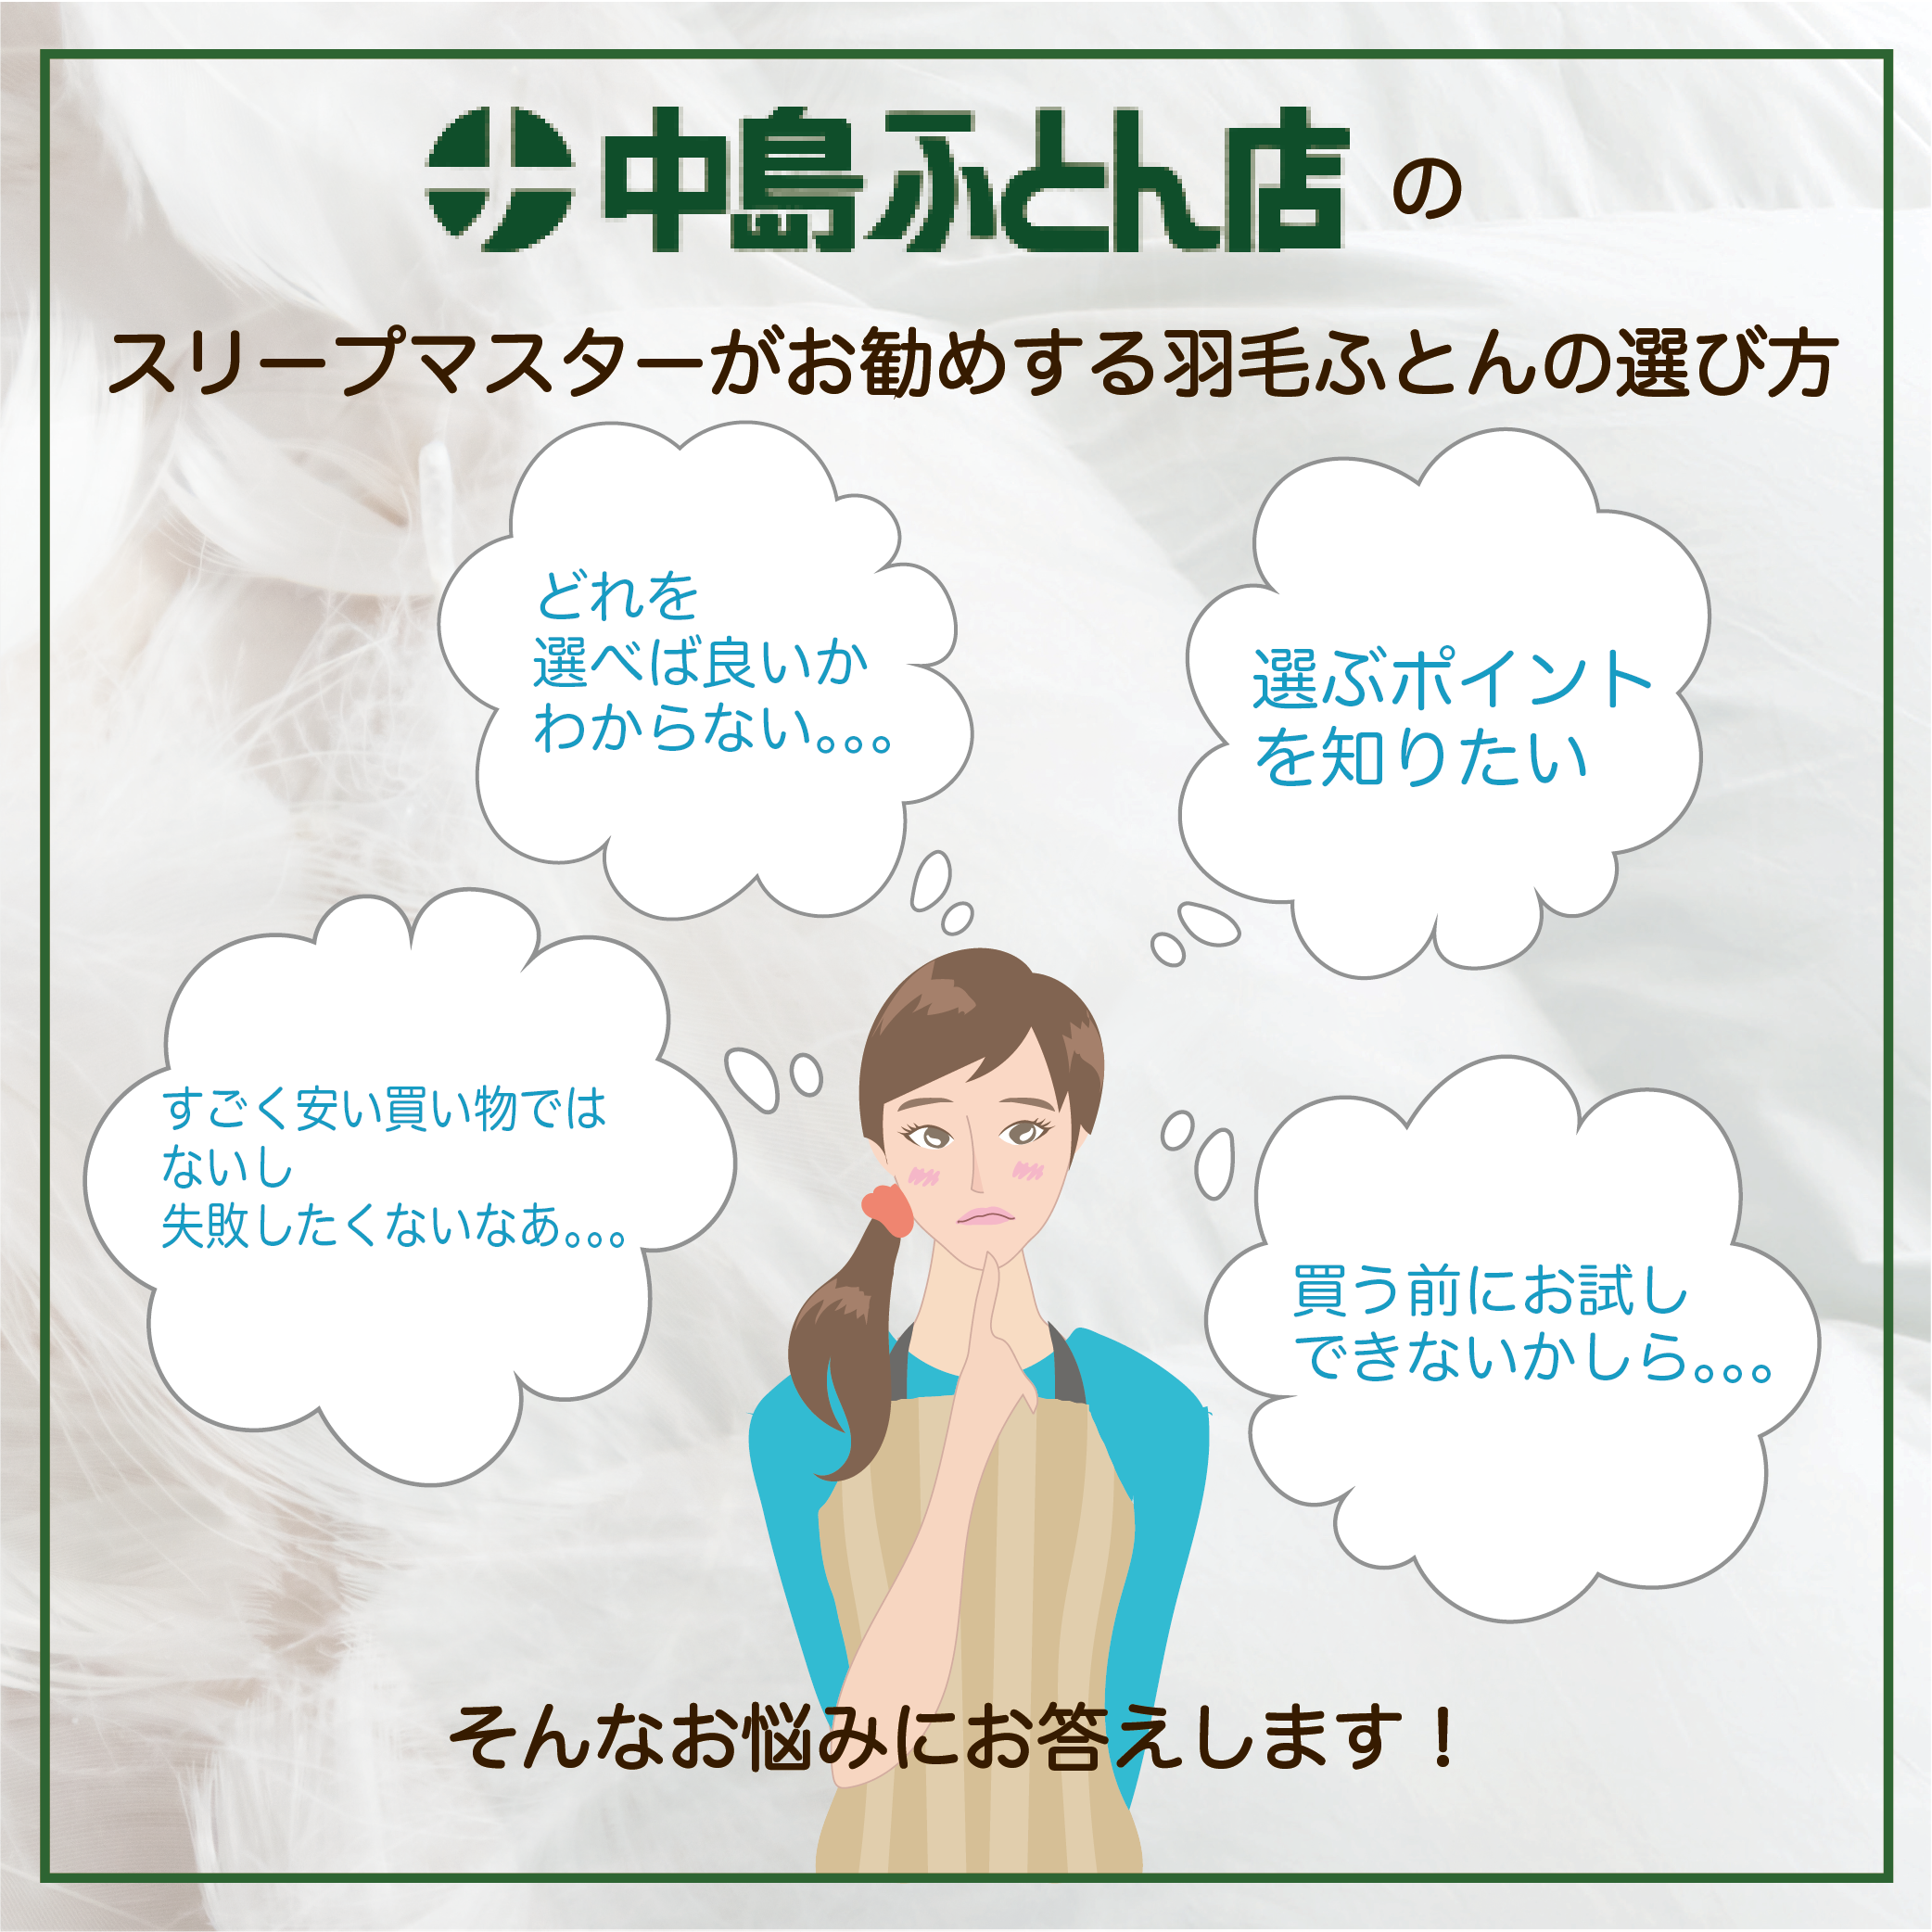 中島ふとん店 | nakashimafutonten.com | スリープマスターがお勧めする「羽毛ふとんの選びかた」